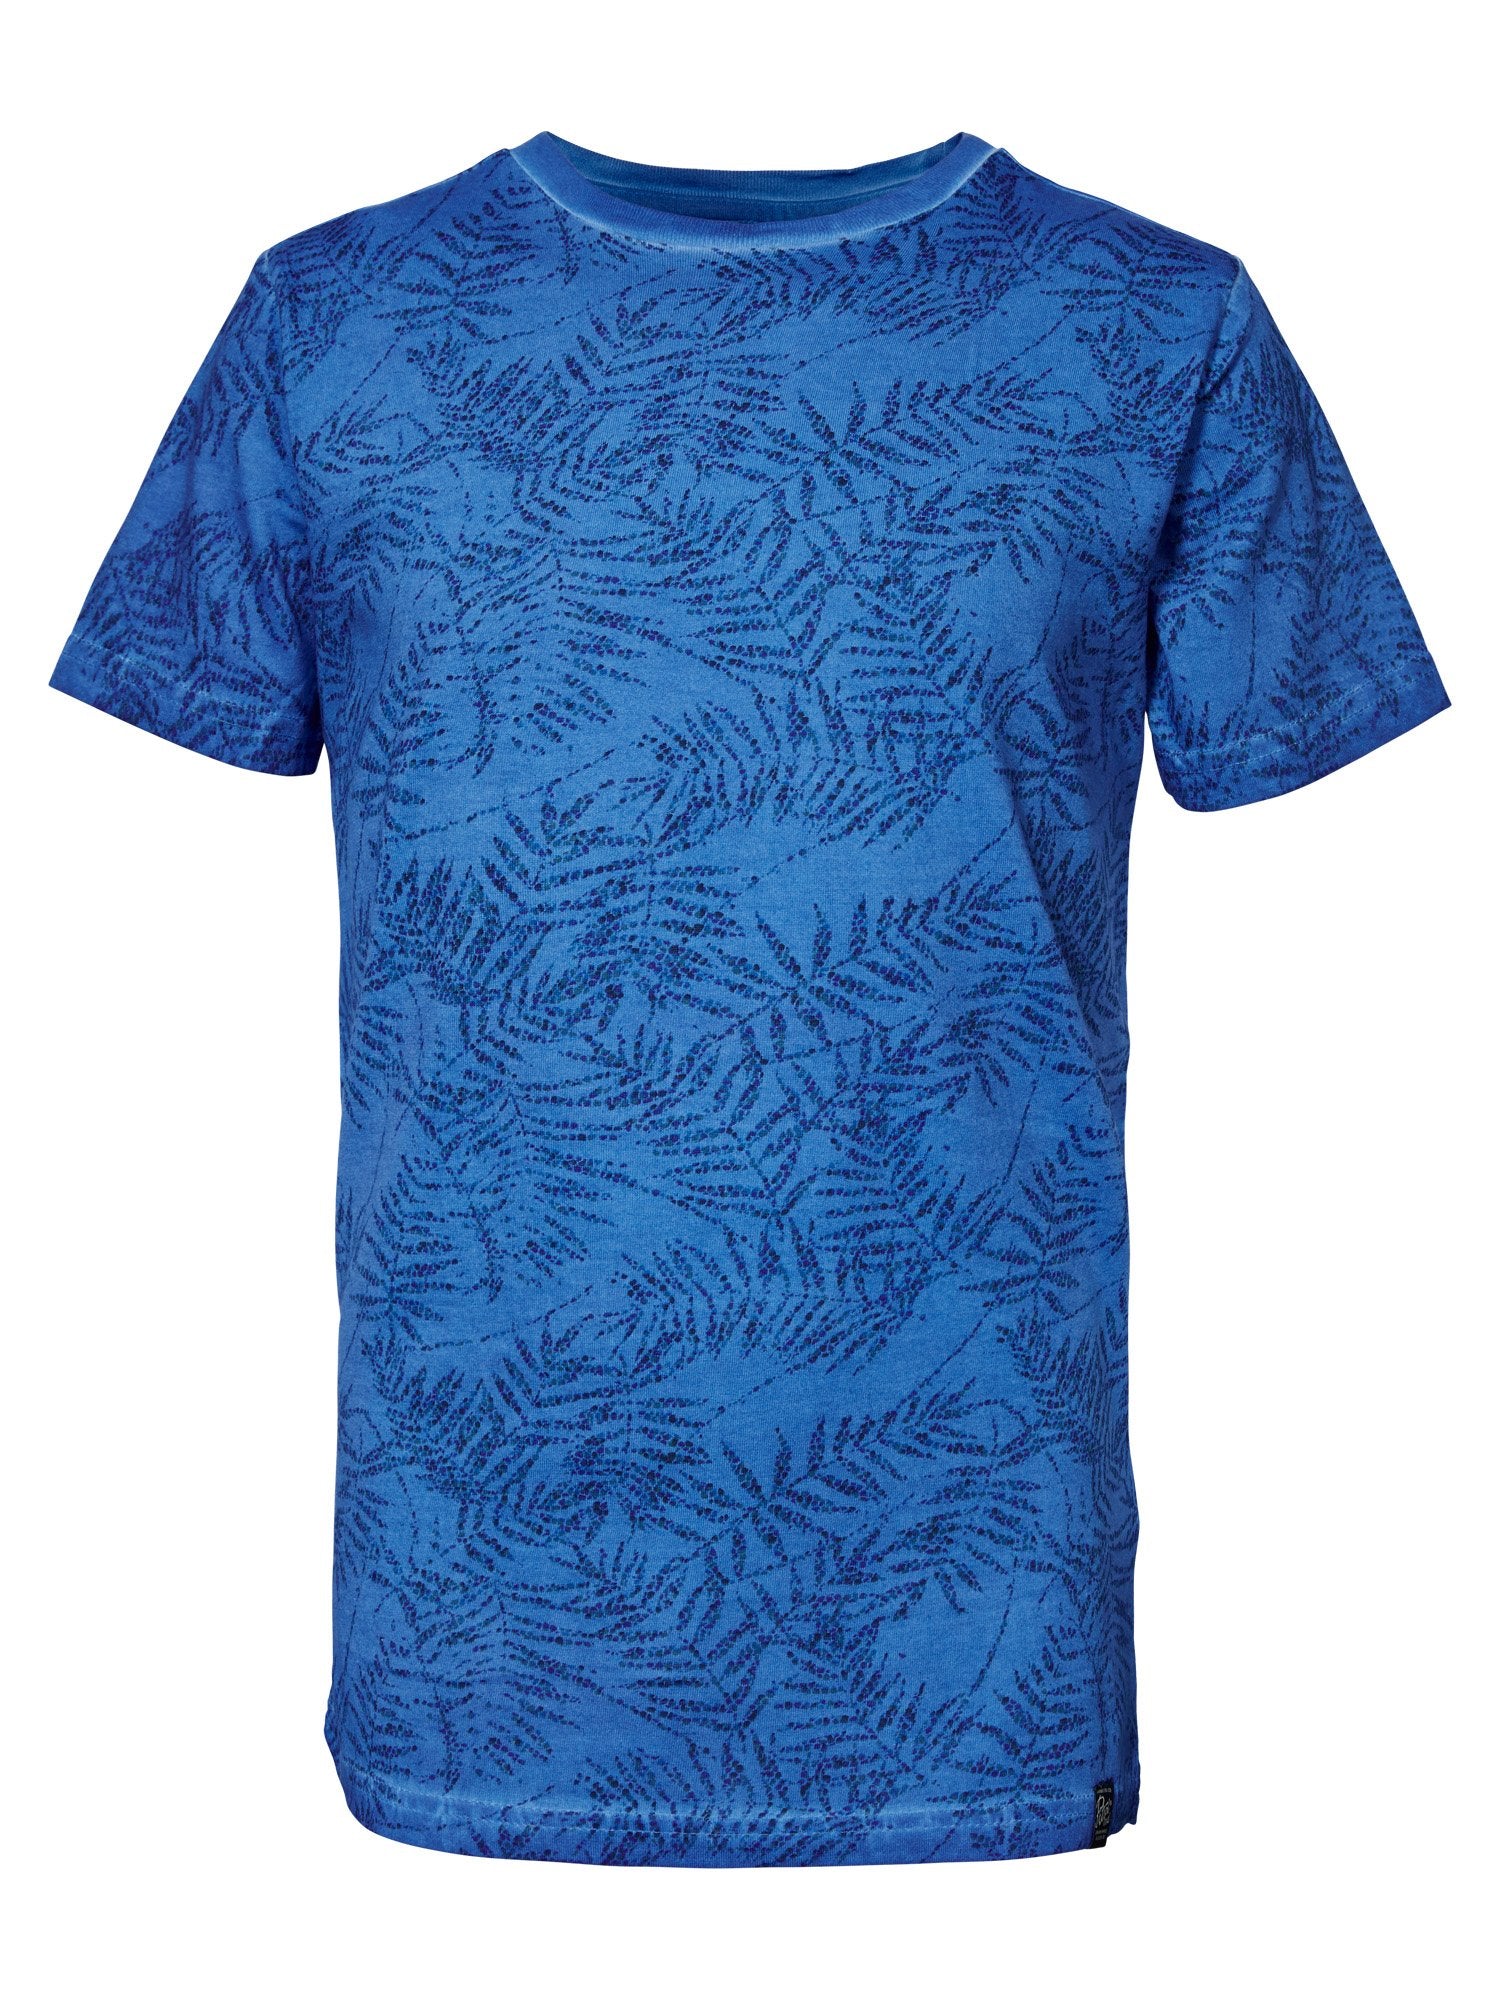 Jongens T-shirt AOP Palm van Petrol Industries in de kleur Antartic Blue in maat 176.